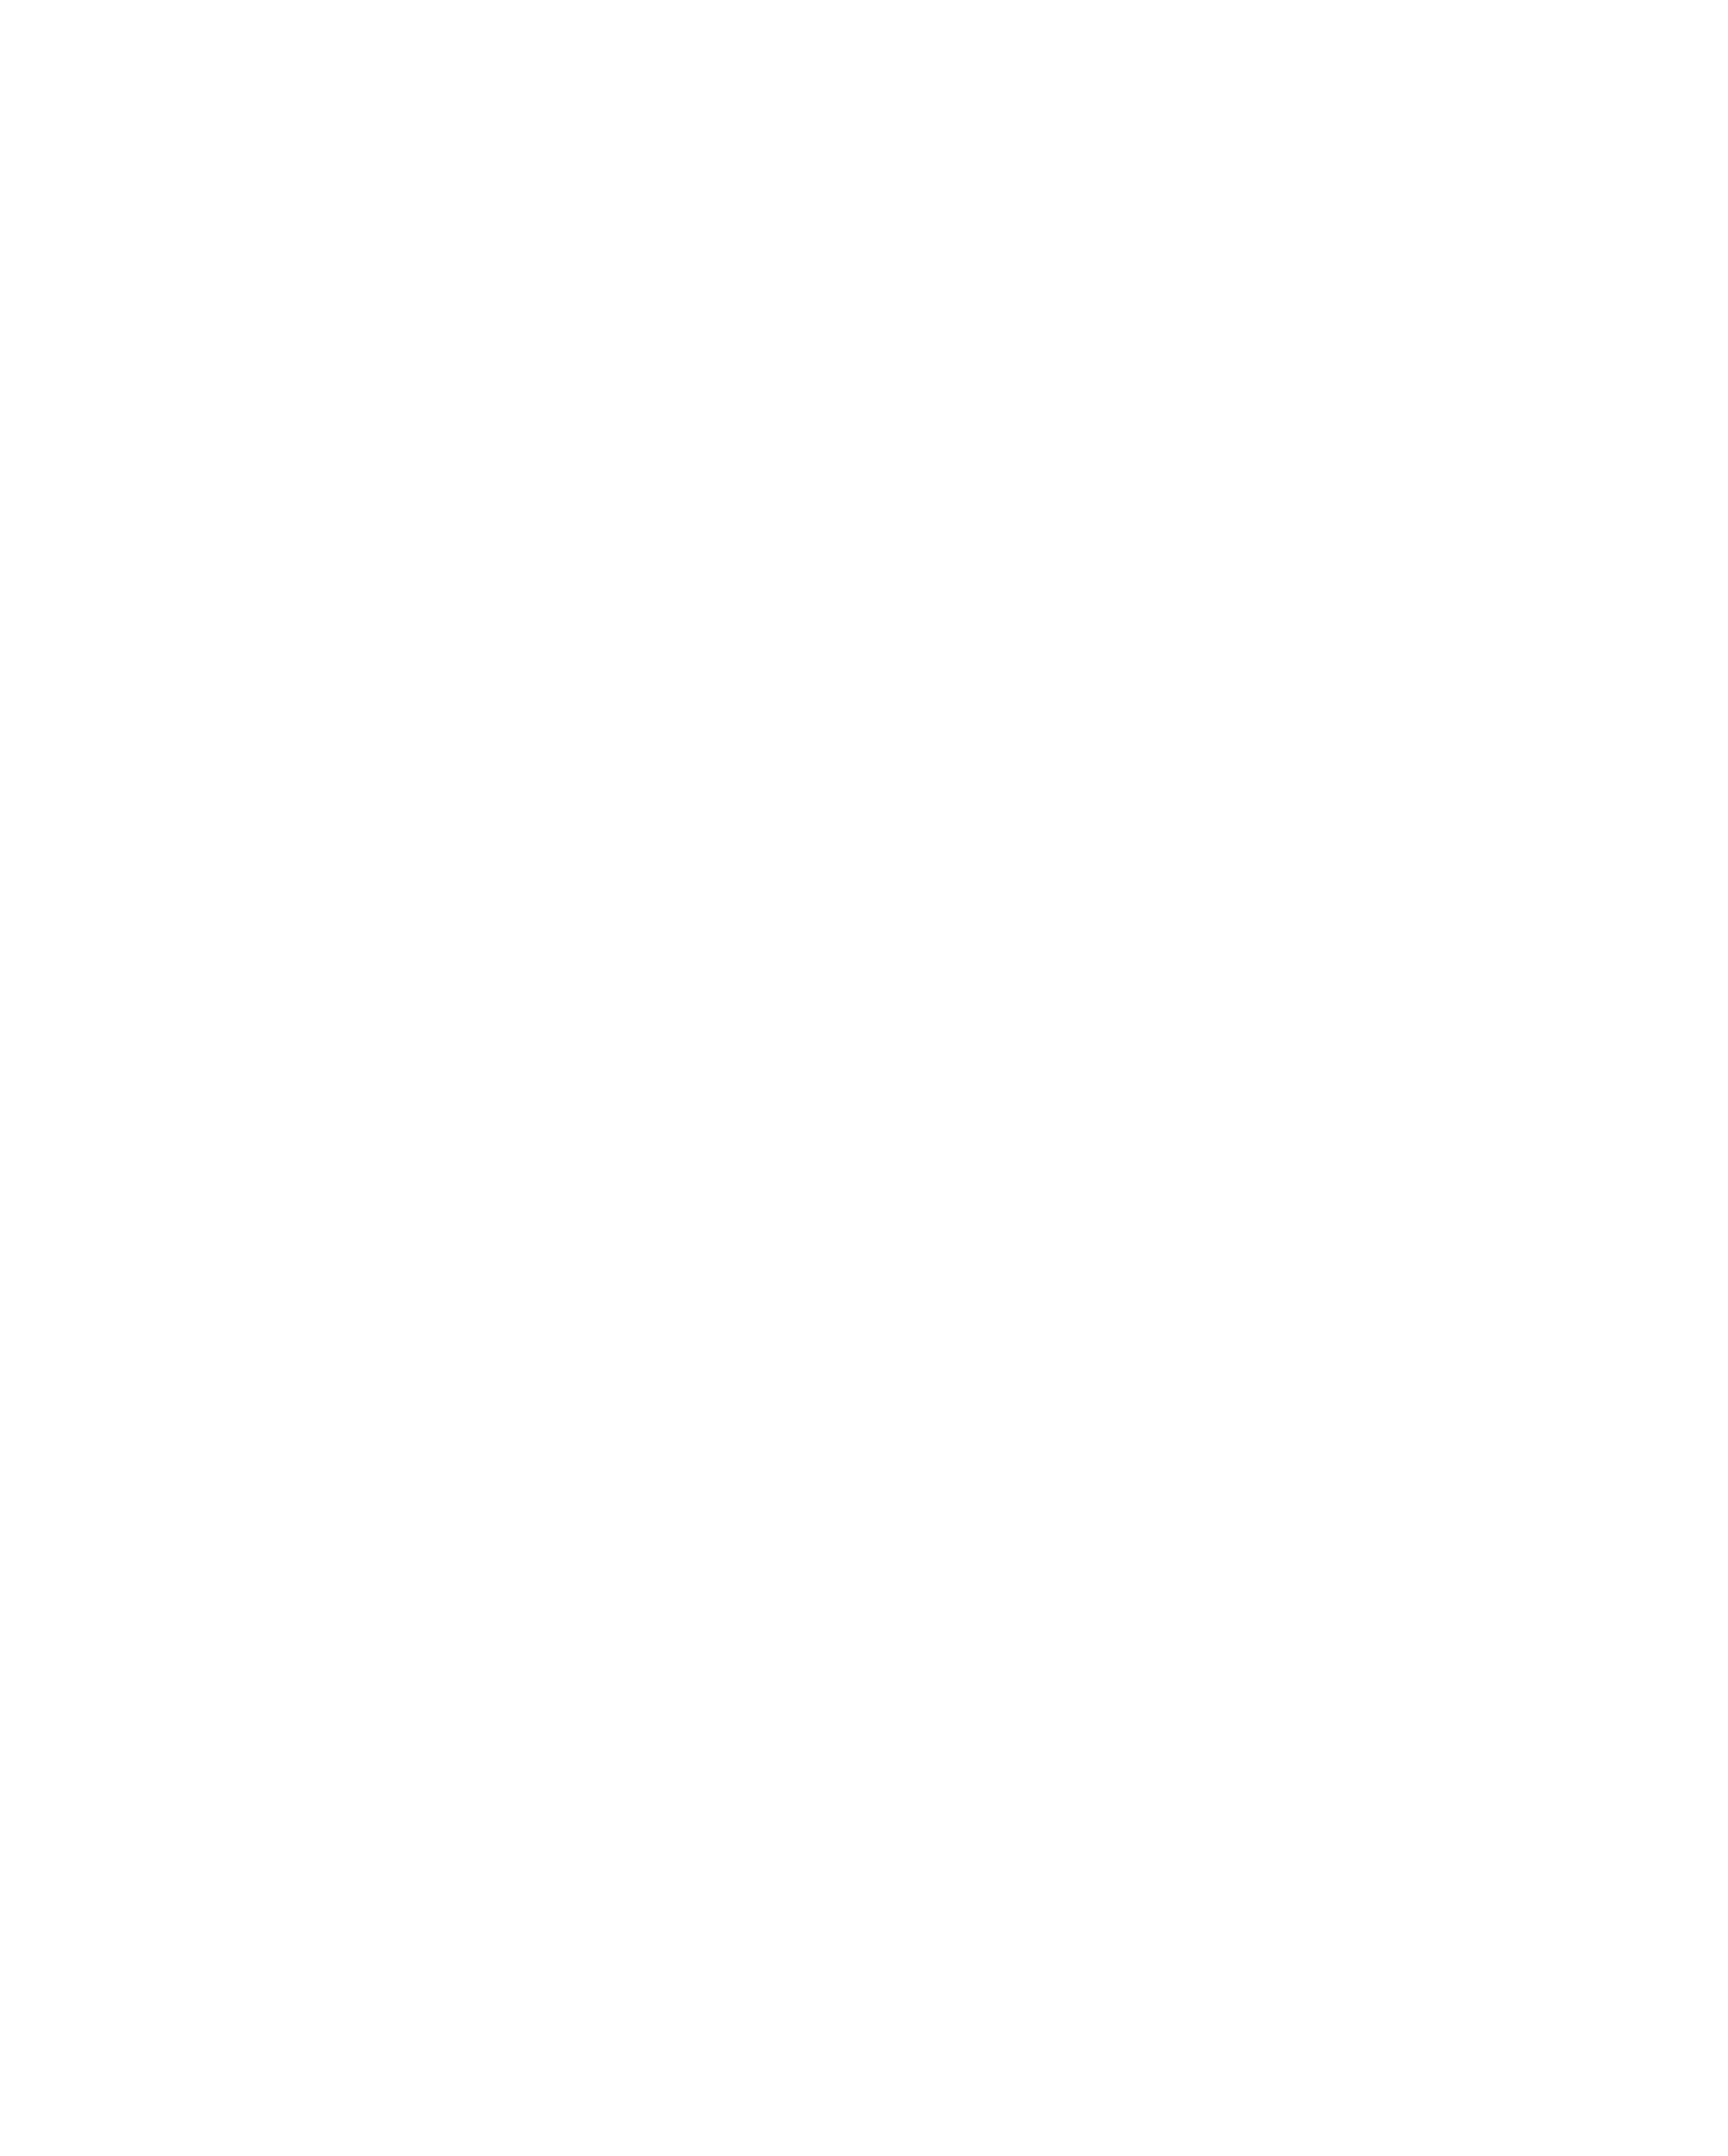 MG Bangladesh